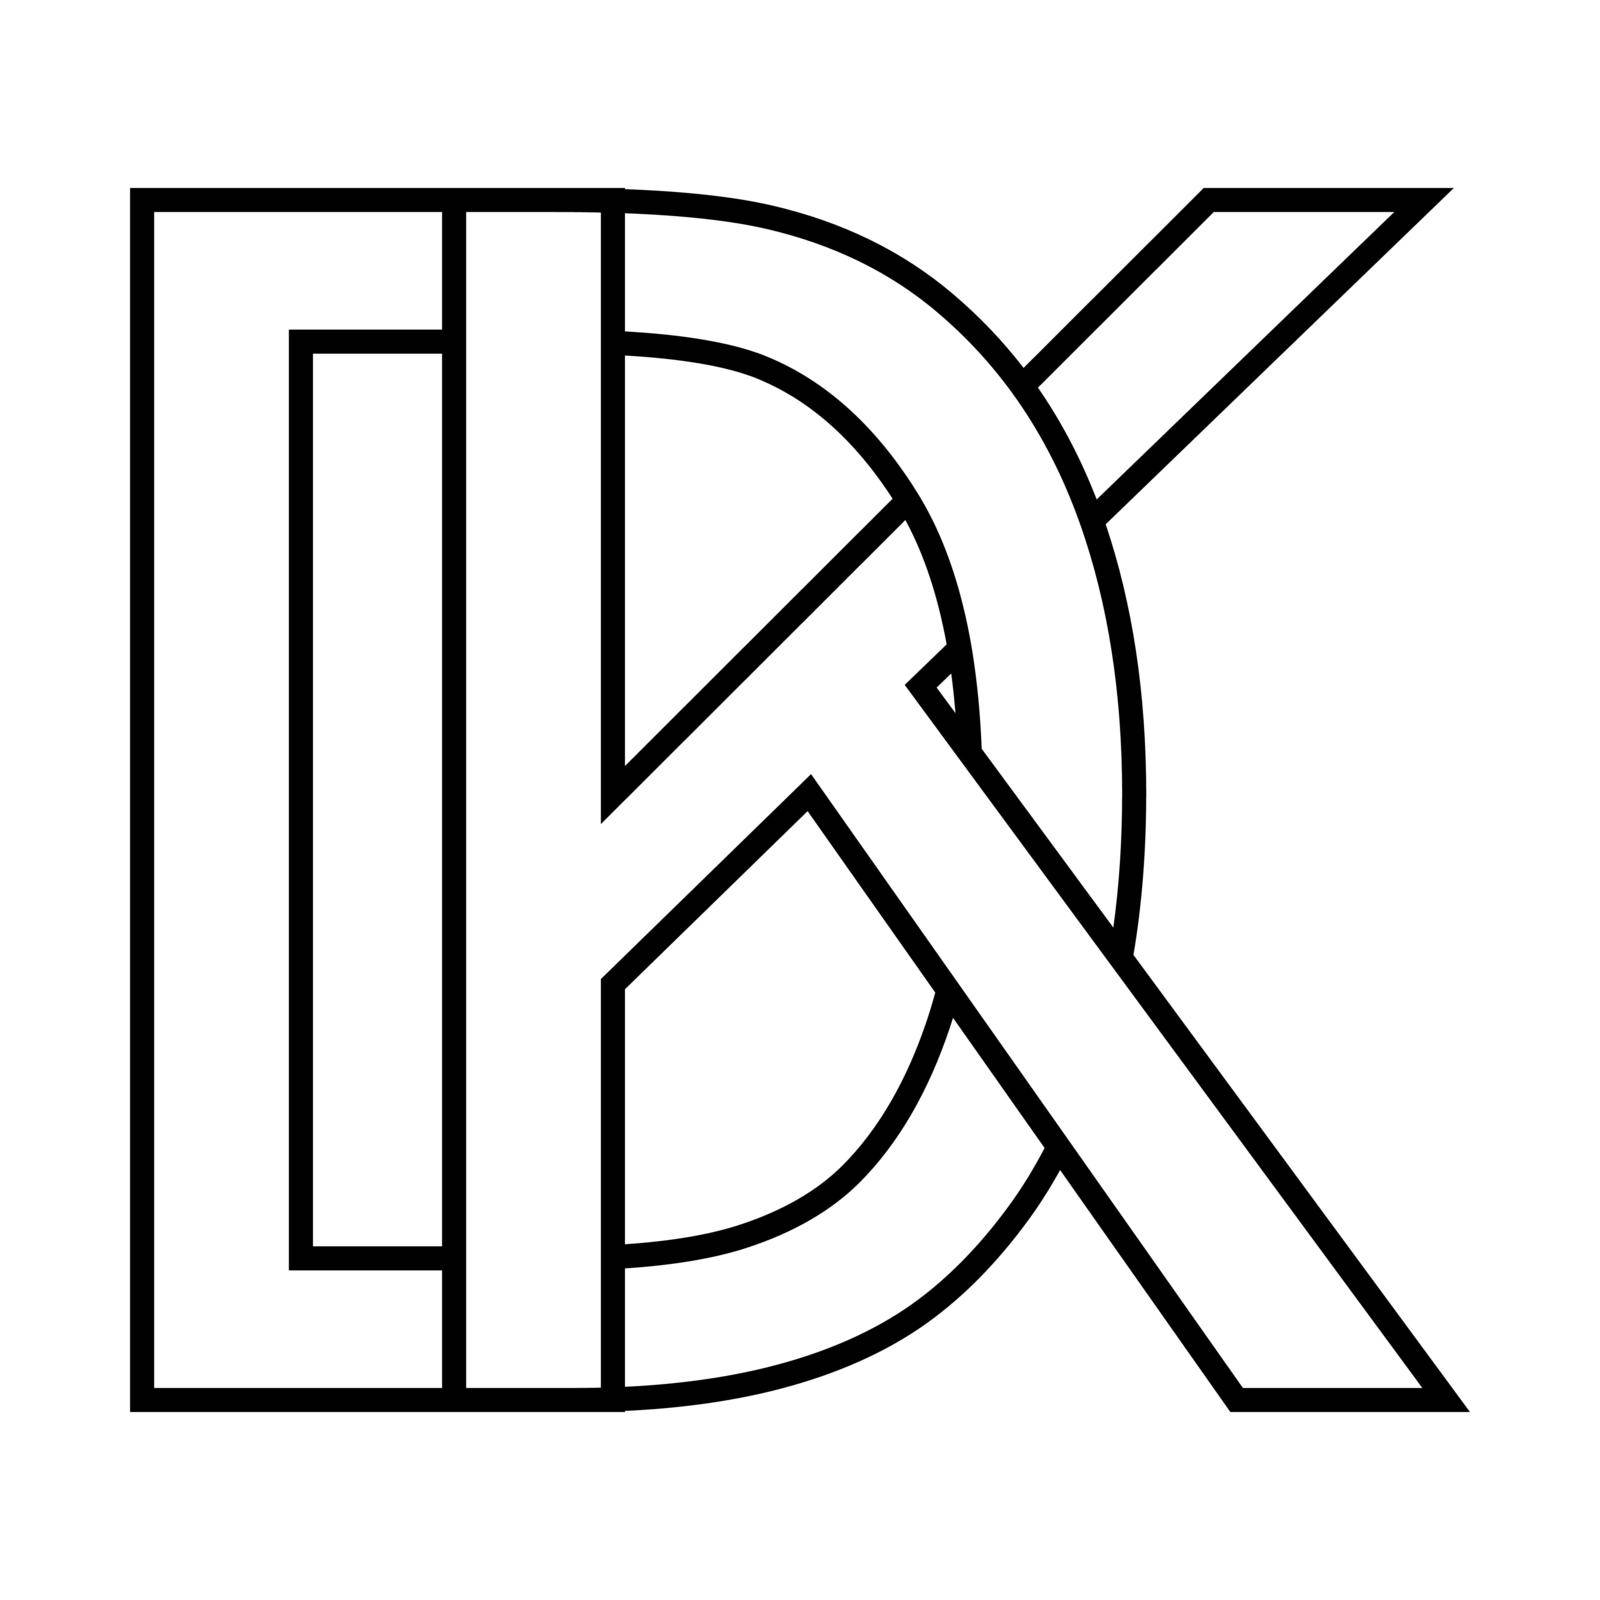 Logo sign dk kd icon sign dk interlaced letters d k